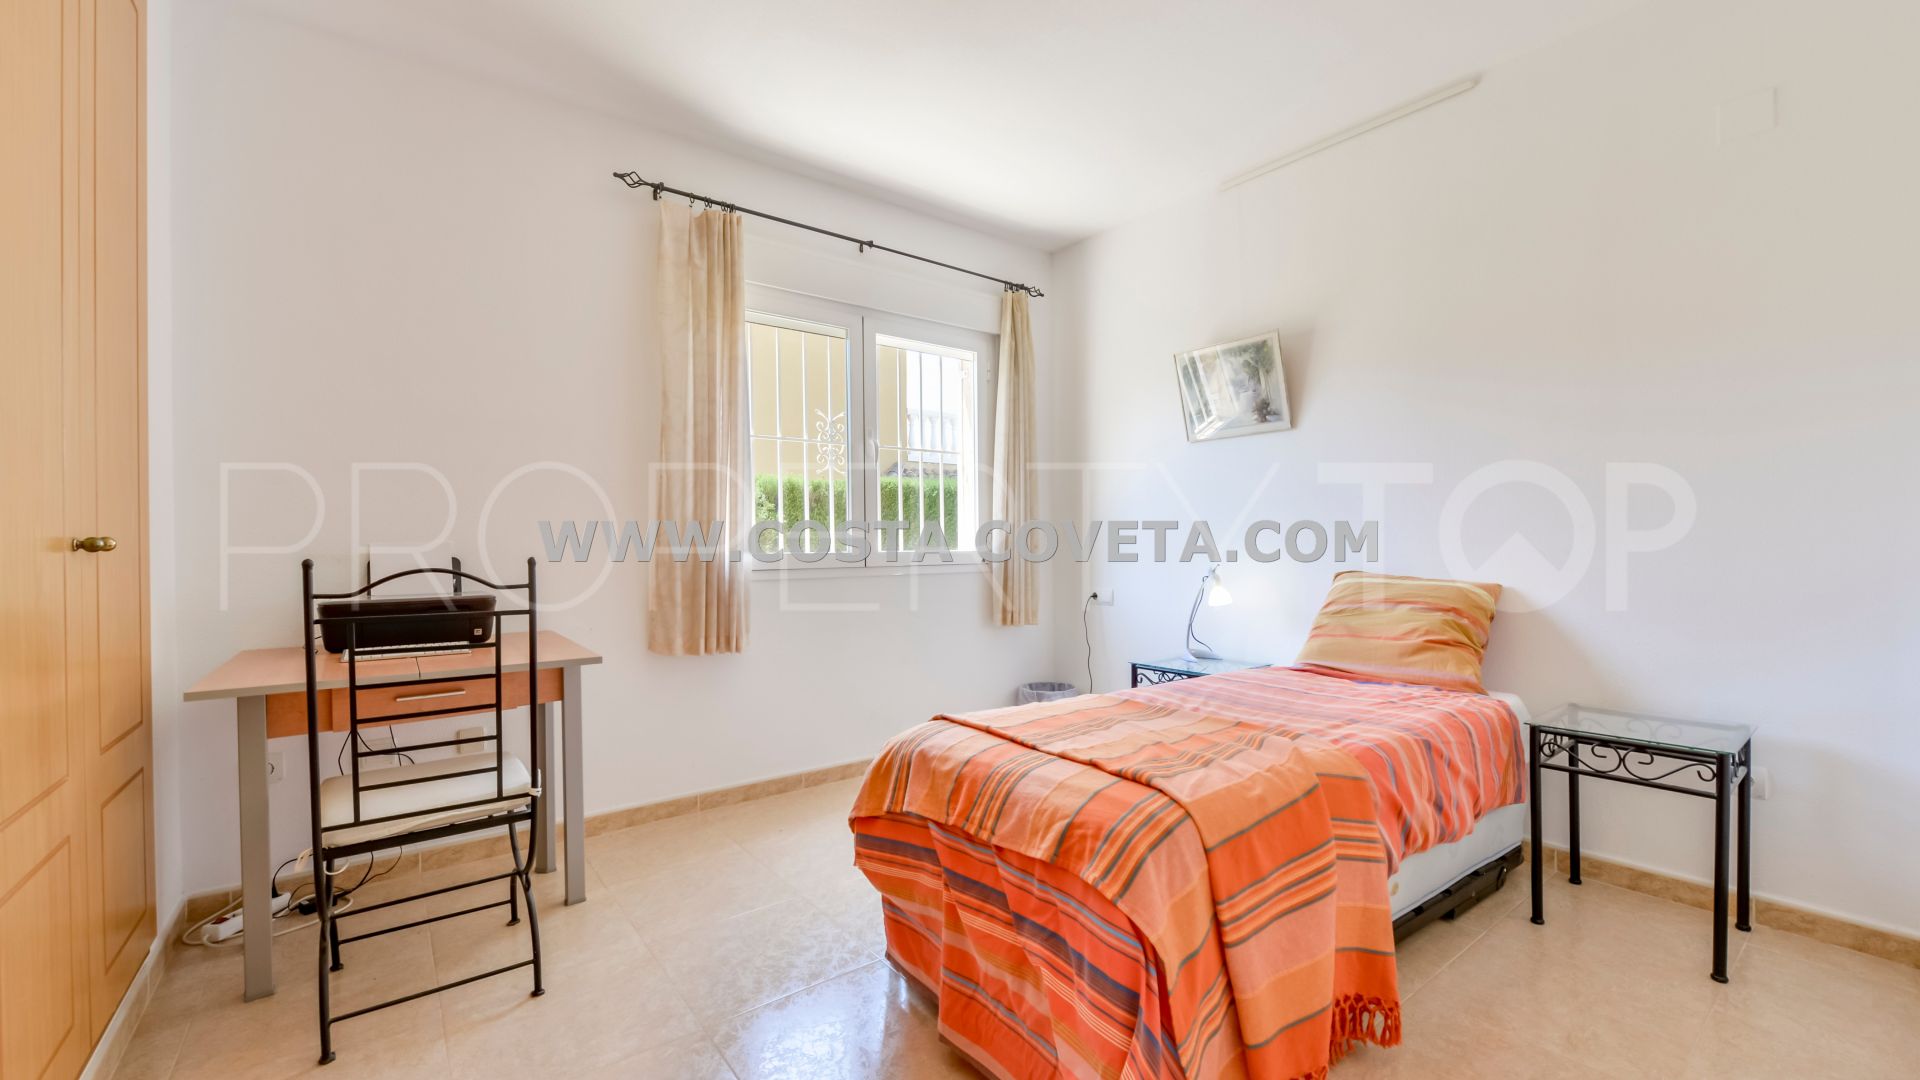 3 bedrooms Busot villa for sale